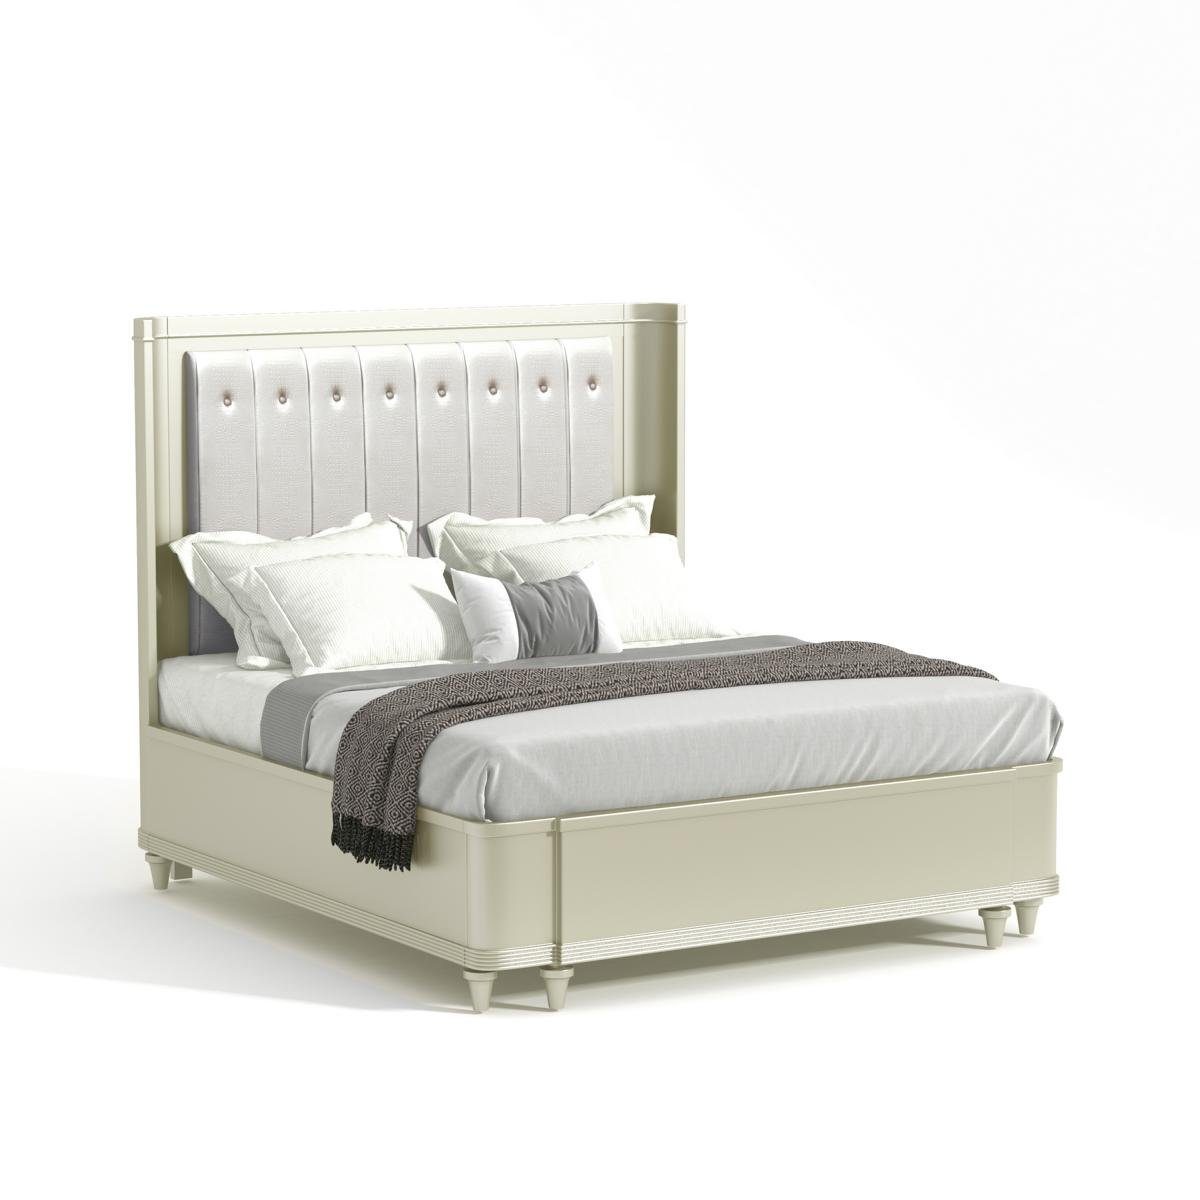 JVmoebel Bett, Polster Design Luxus Bett 180 x 200cm Stoff Betten Leder